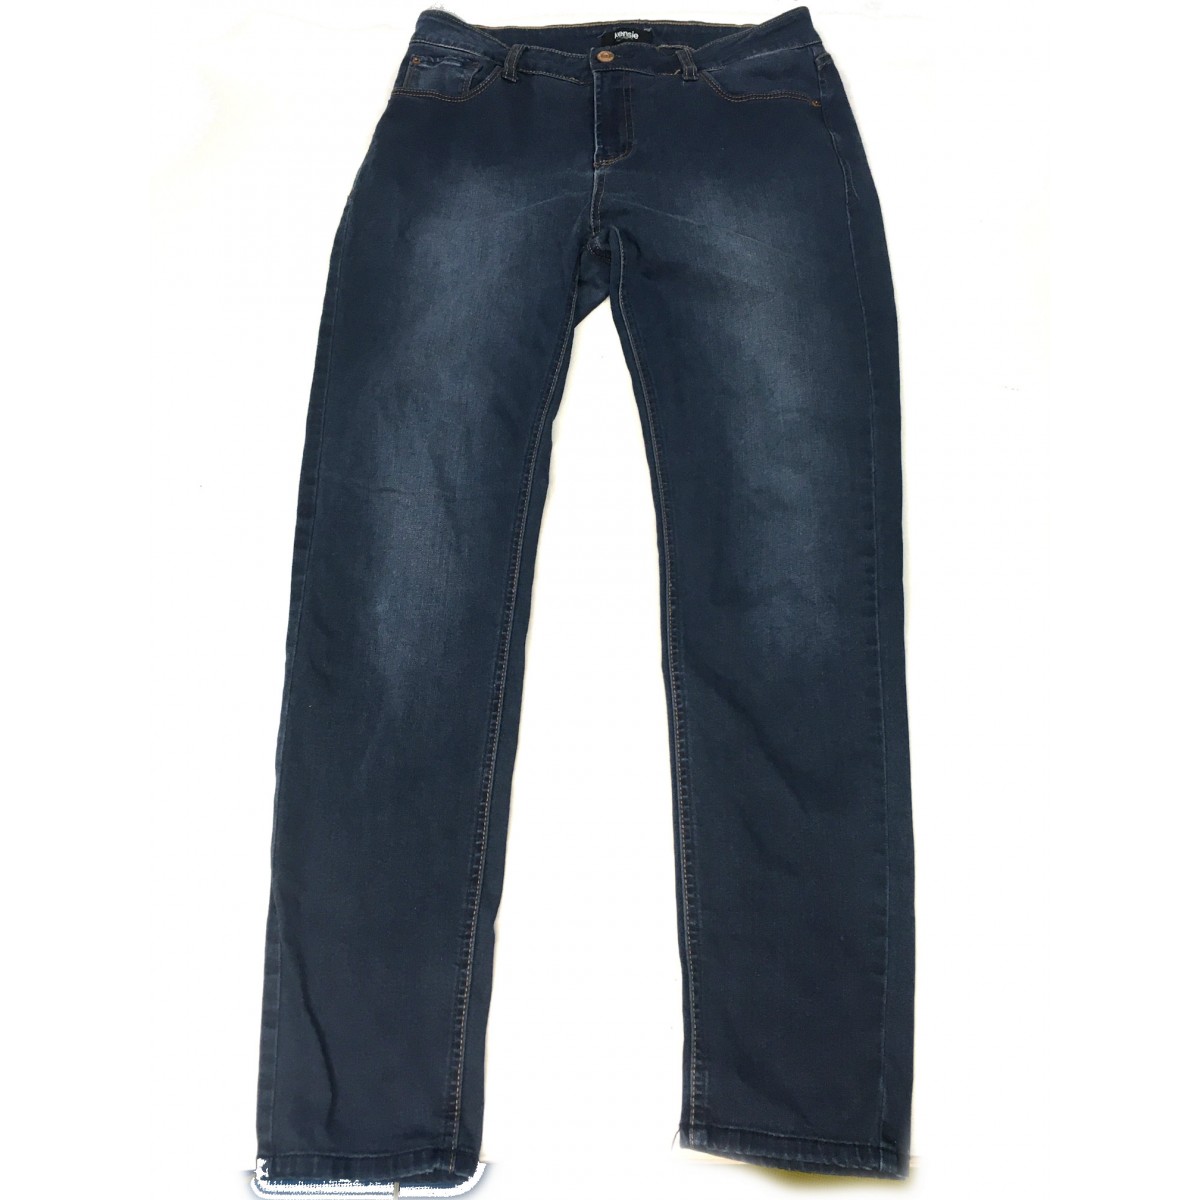 jeans Kensi / Gr 8 